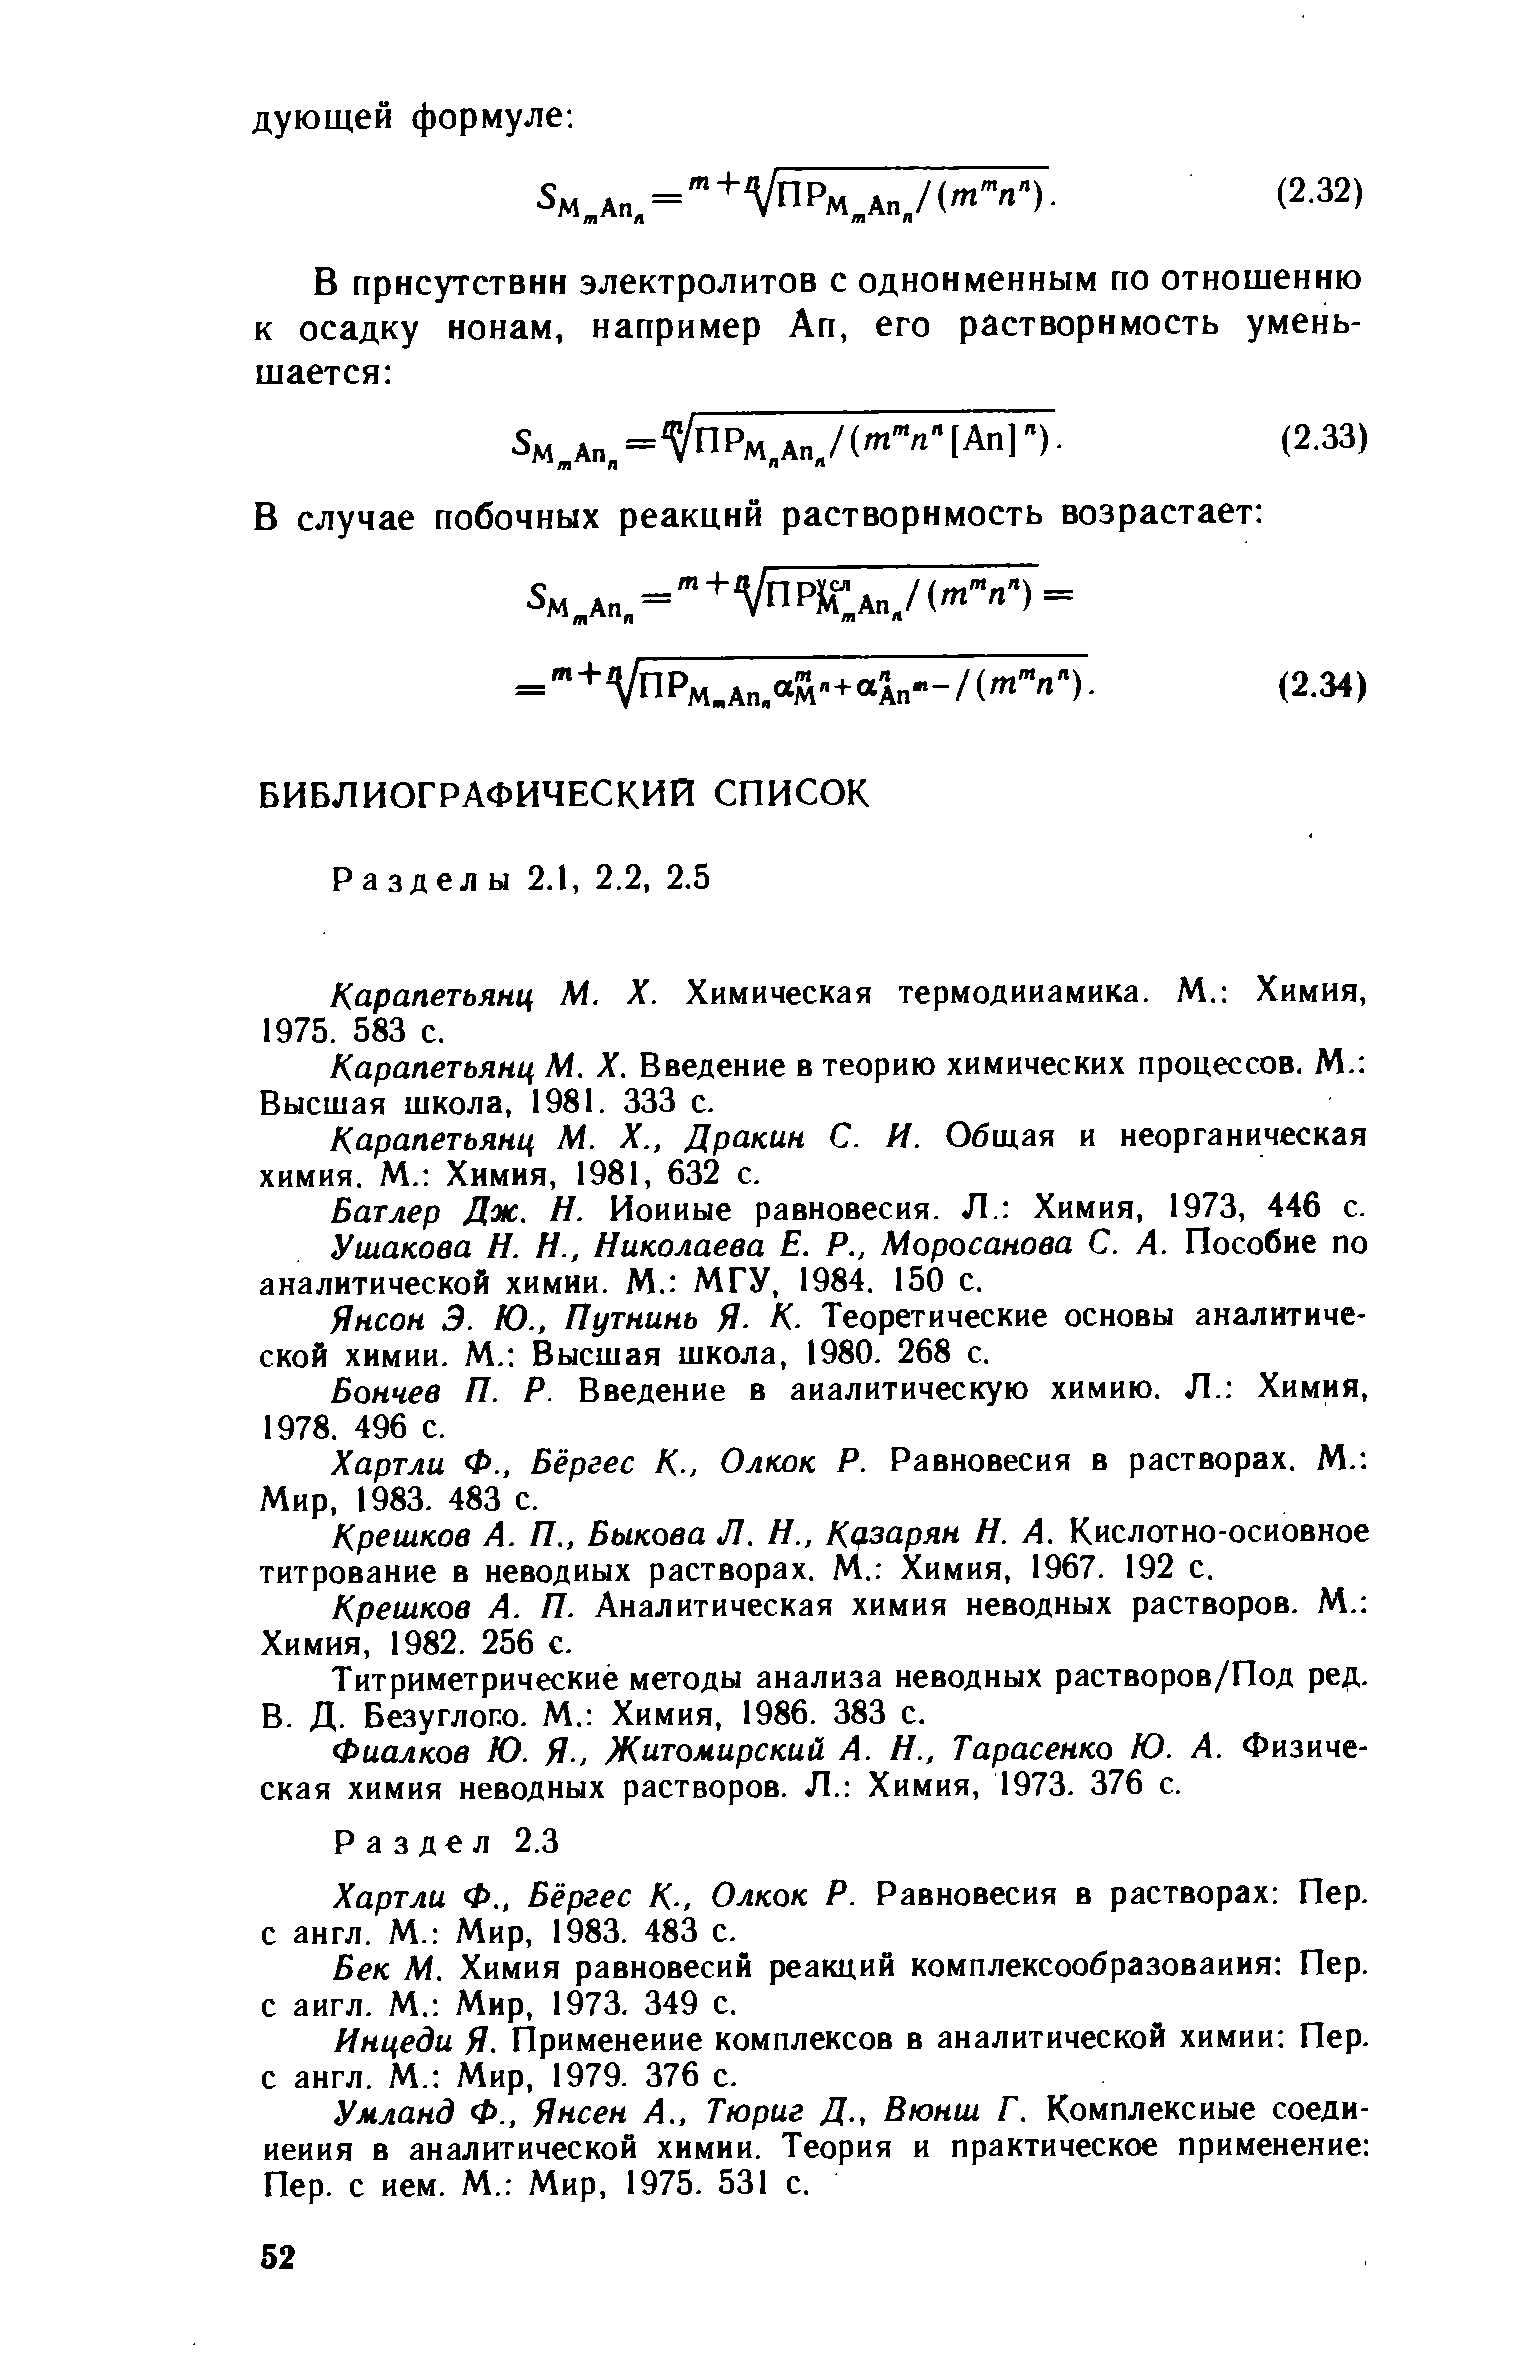 Карапетьянц М, X. Химическая термодинамика. М. Химия, 1975. 583 с.